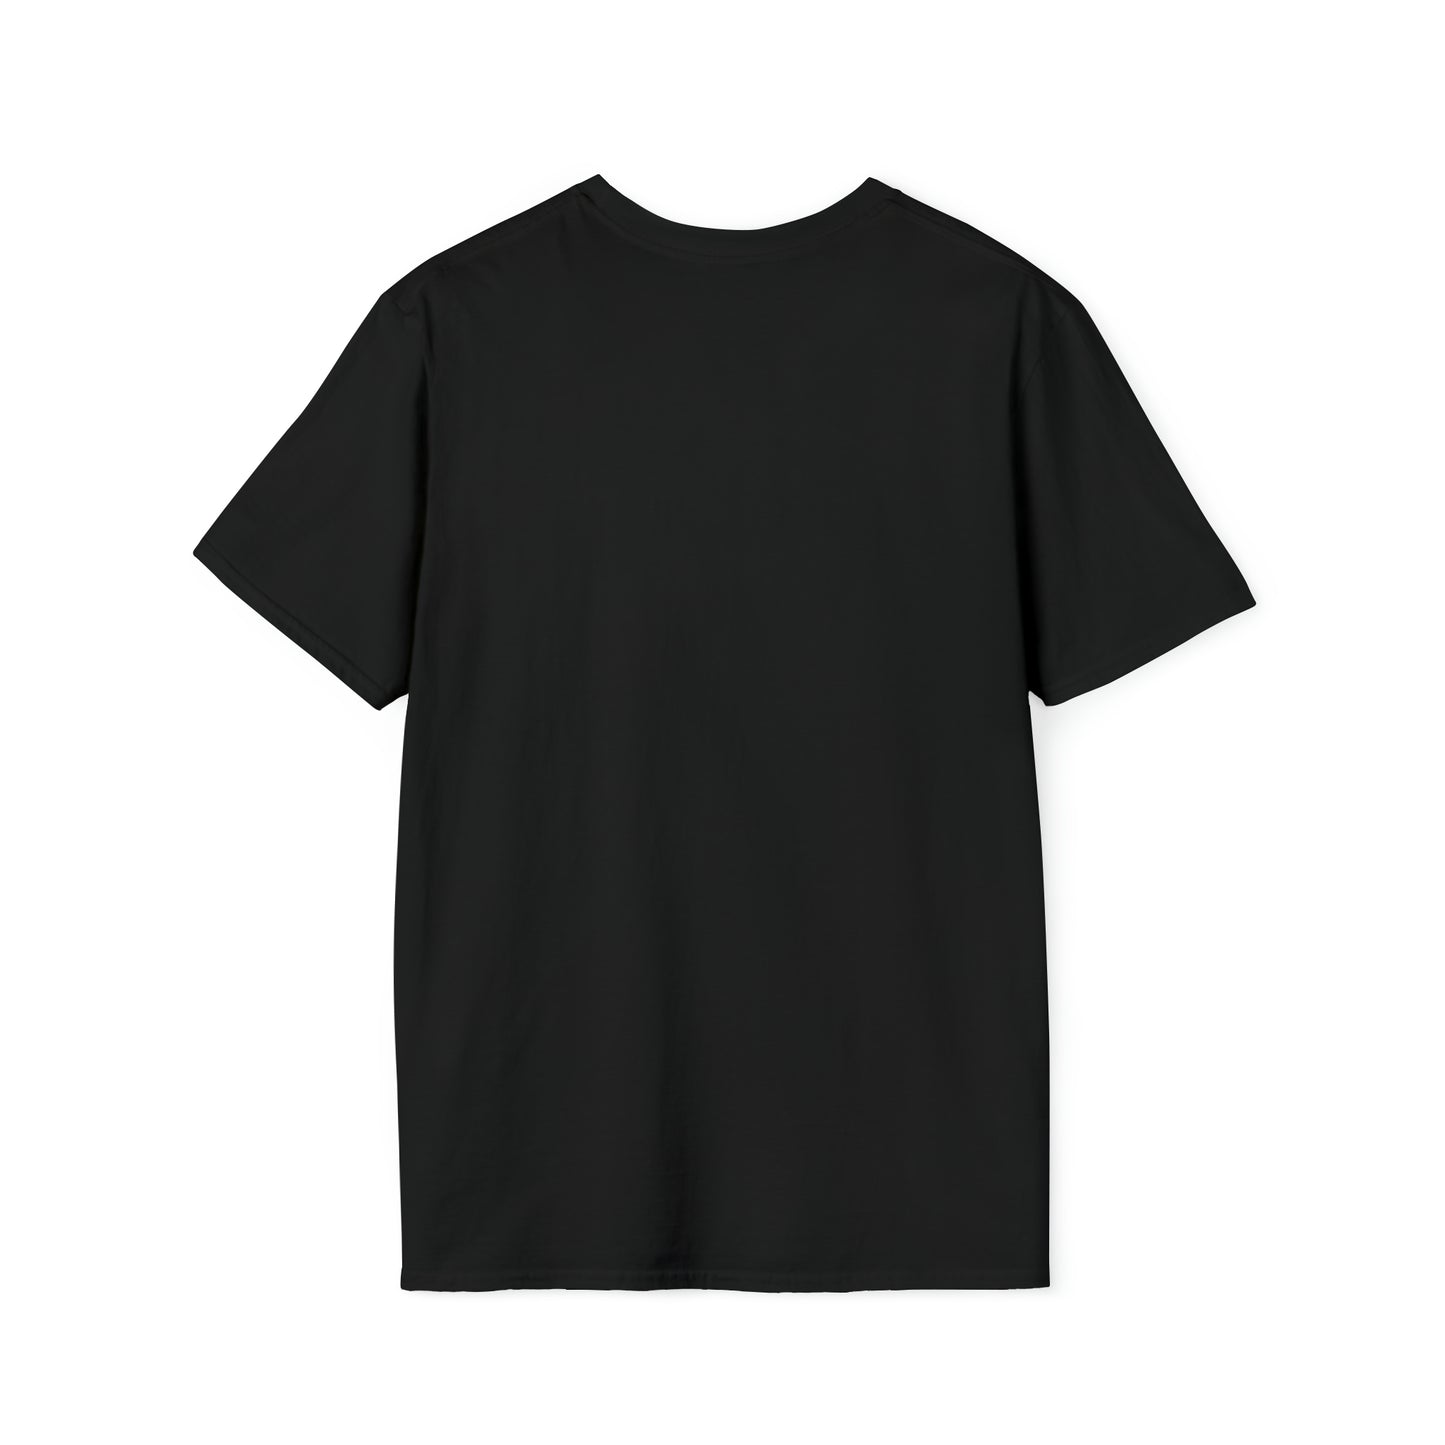 Autumn - 001 Unisex Softstyle T-Shirt